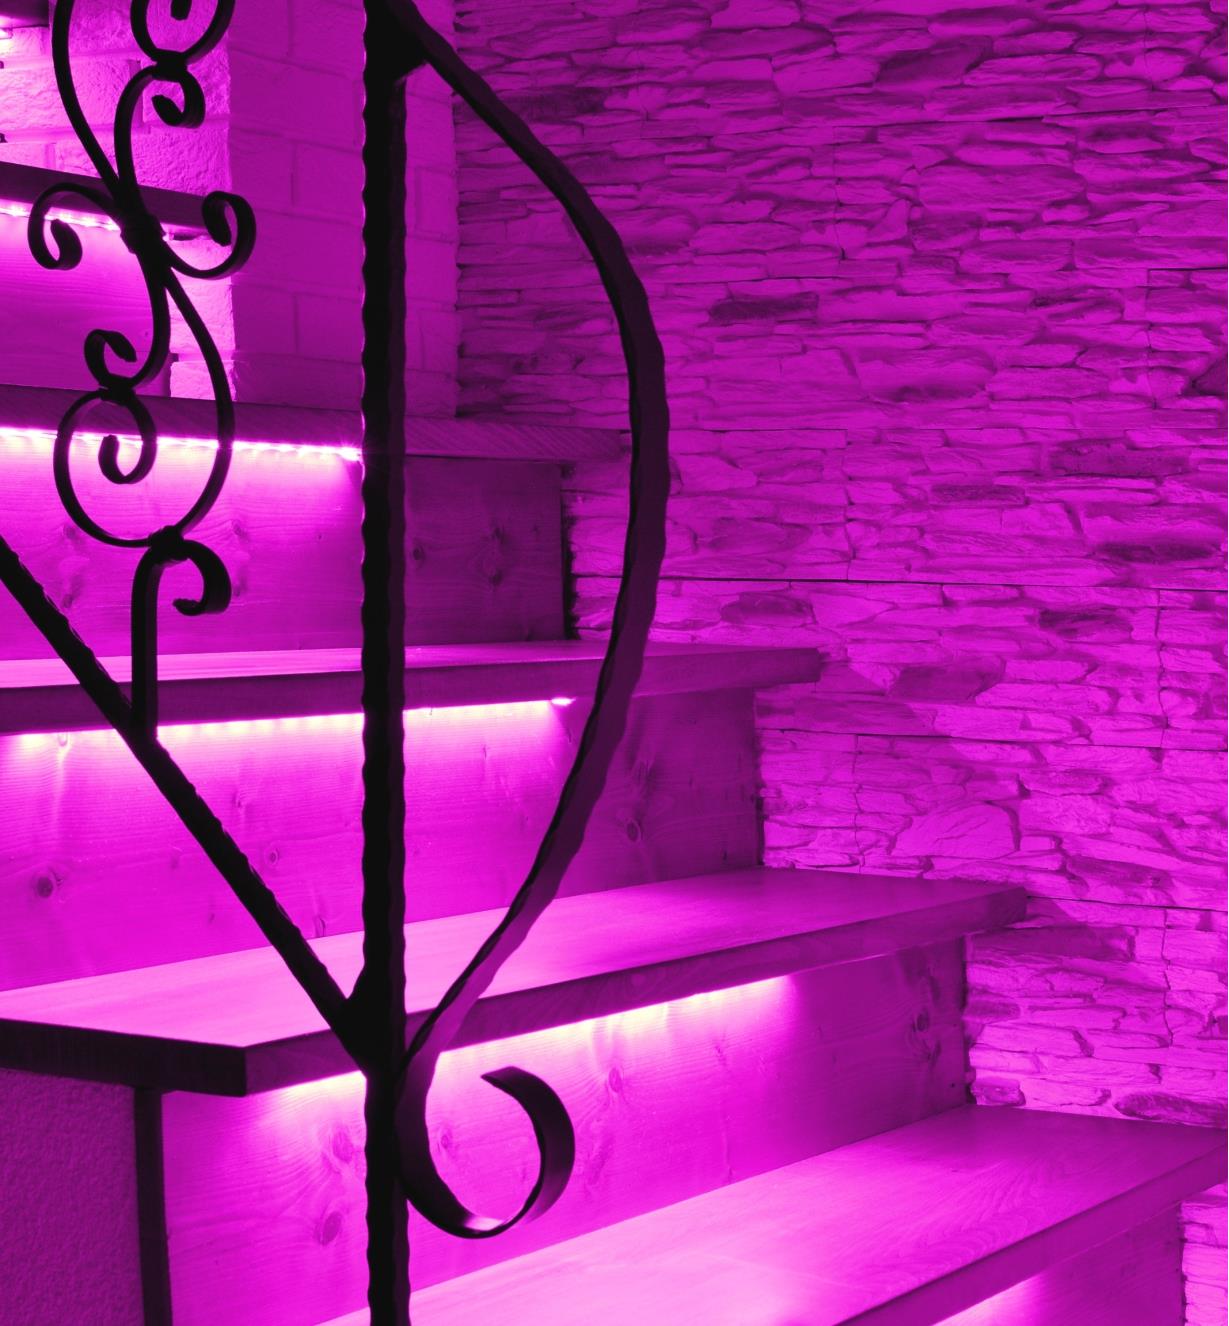 Escalier illuminé par un éclairage d'ambiance rose provenant de luminaires-rubans sous le nez des marches